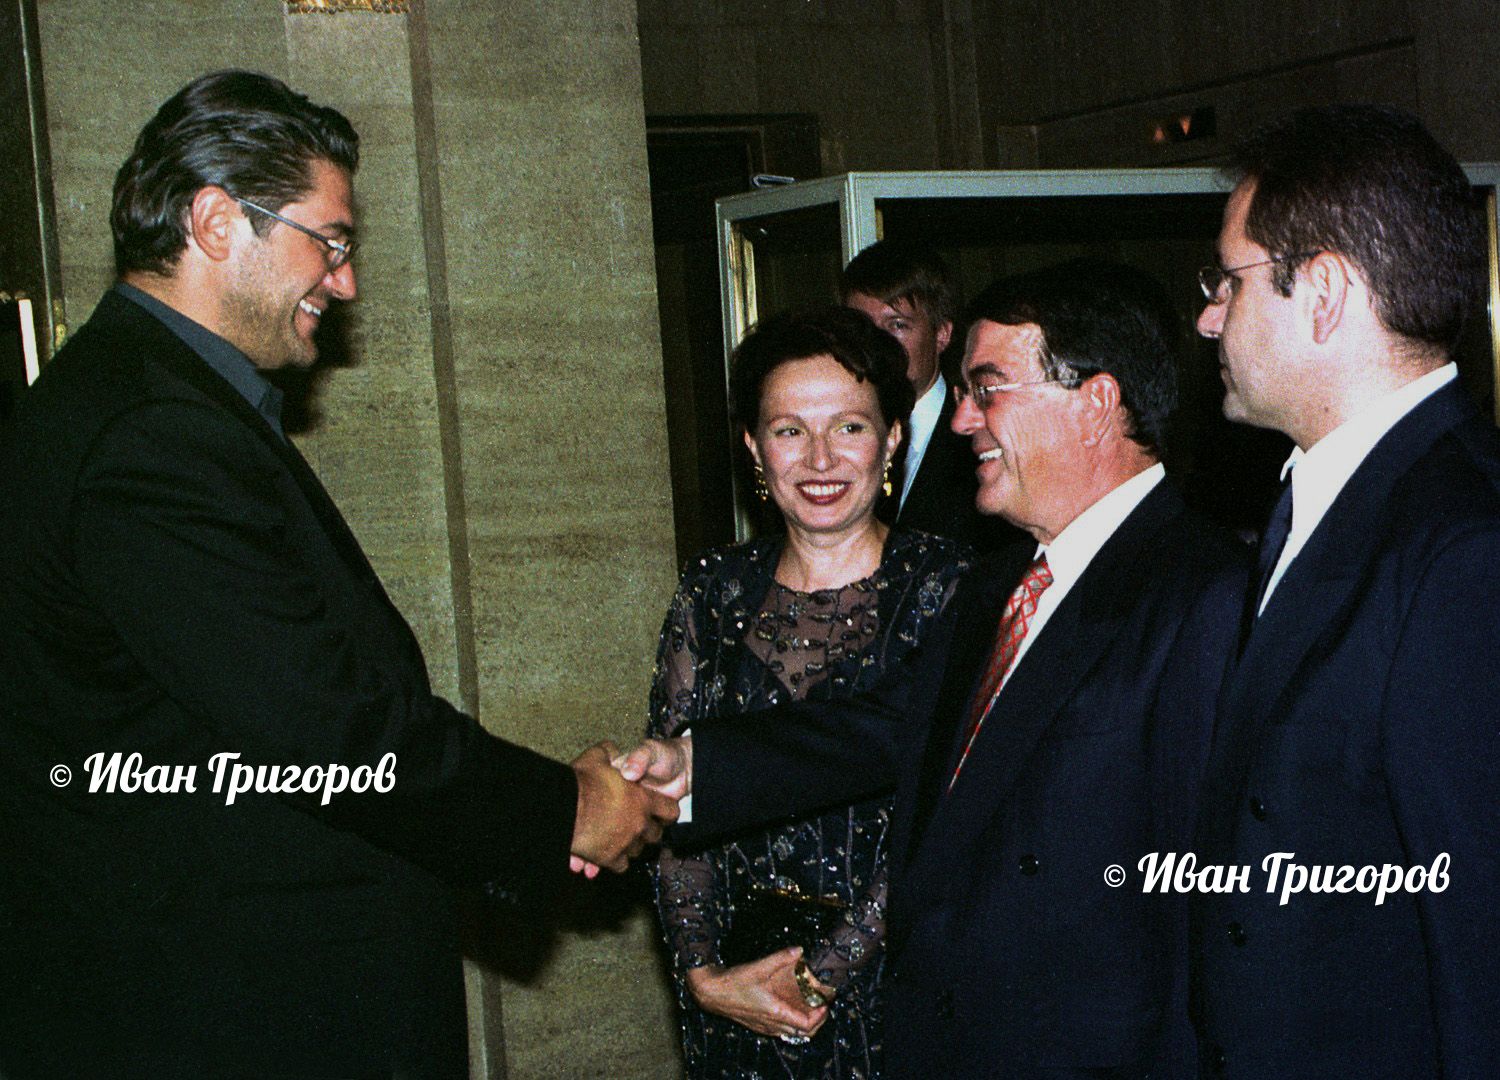 19 юли 2001 г. - Собствениците на Нова телевизия и bTV Минос Кириаку и Красимир Гергов (вляво) се здрависват пред погледа на Силва Зурлева